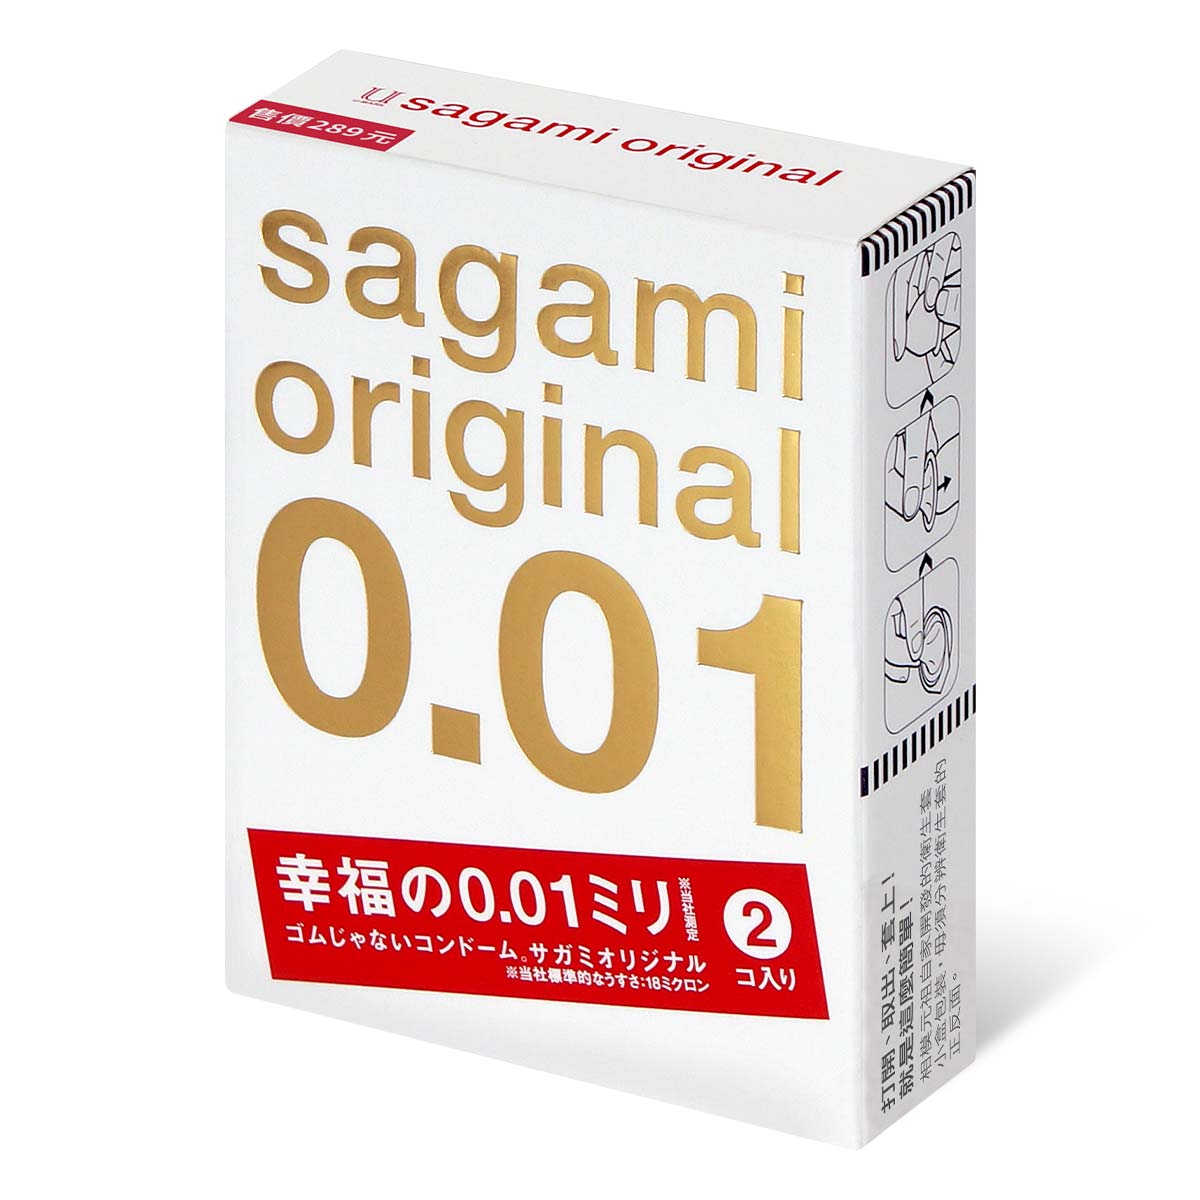 Sagami Original 0.01 2's Pack PU Condom-p_1